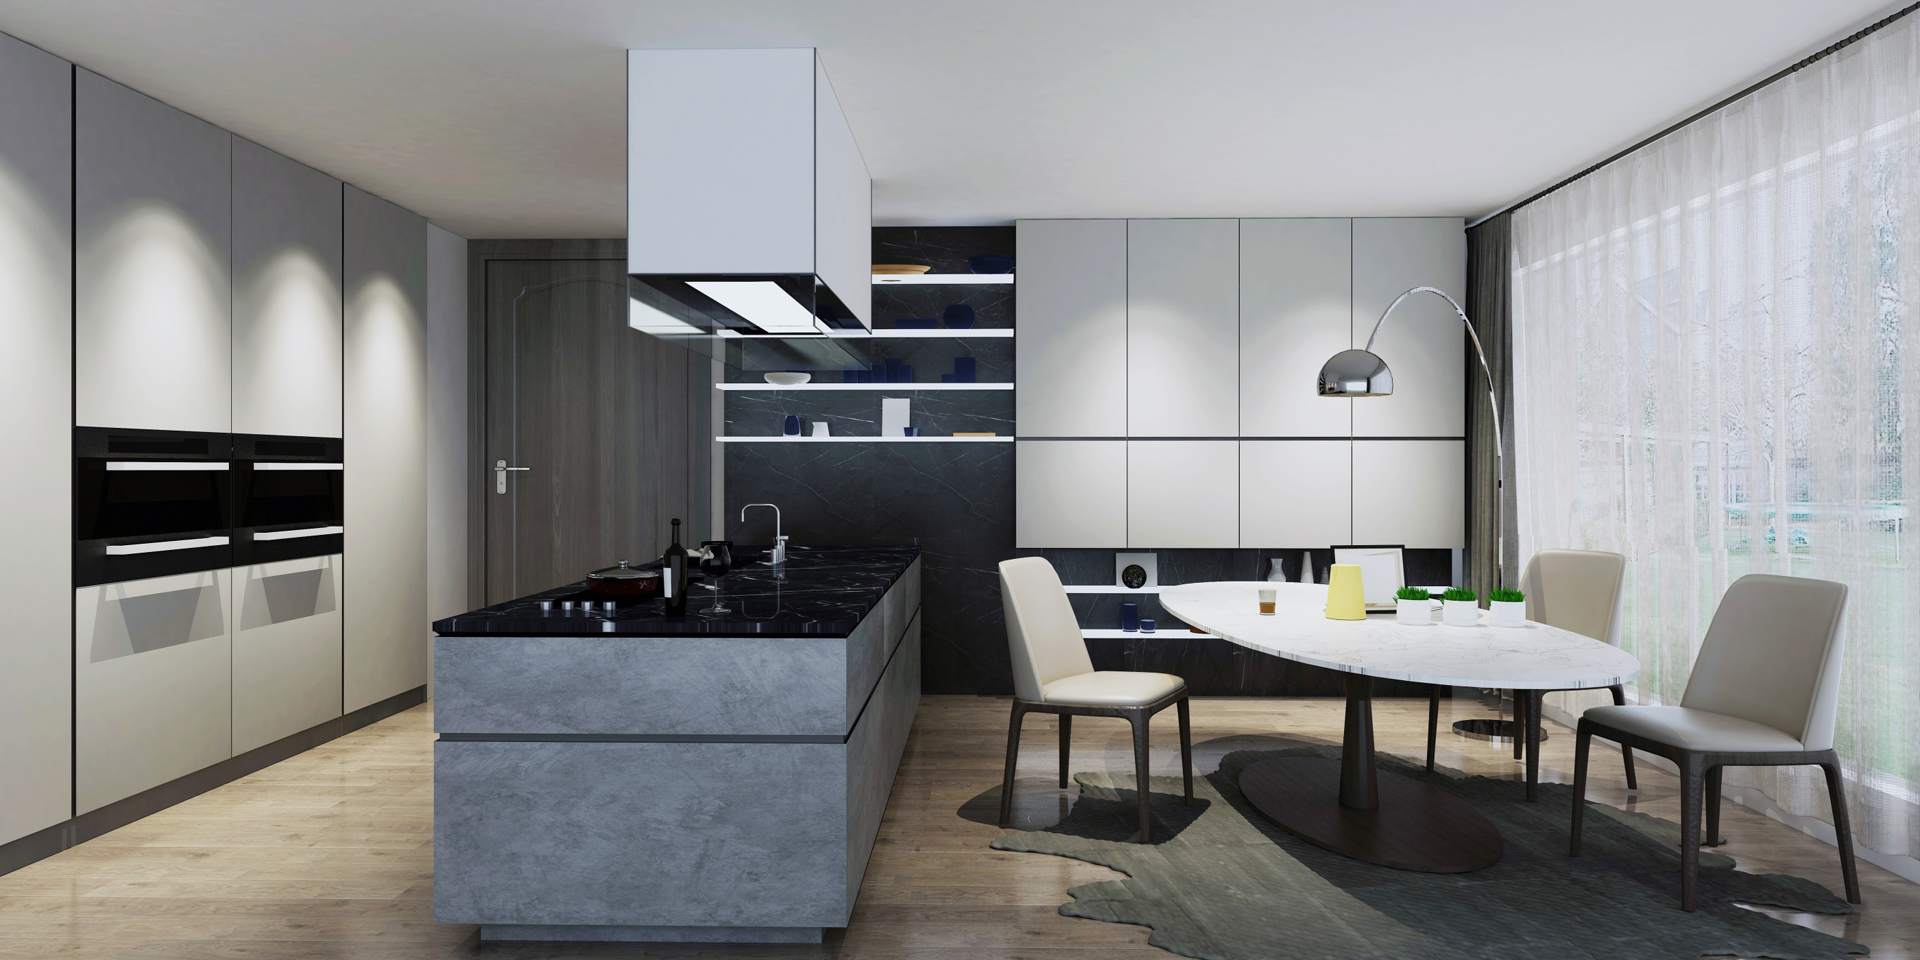 grey melamine kitchen cabinet.jpg